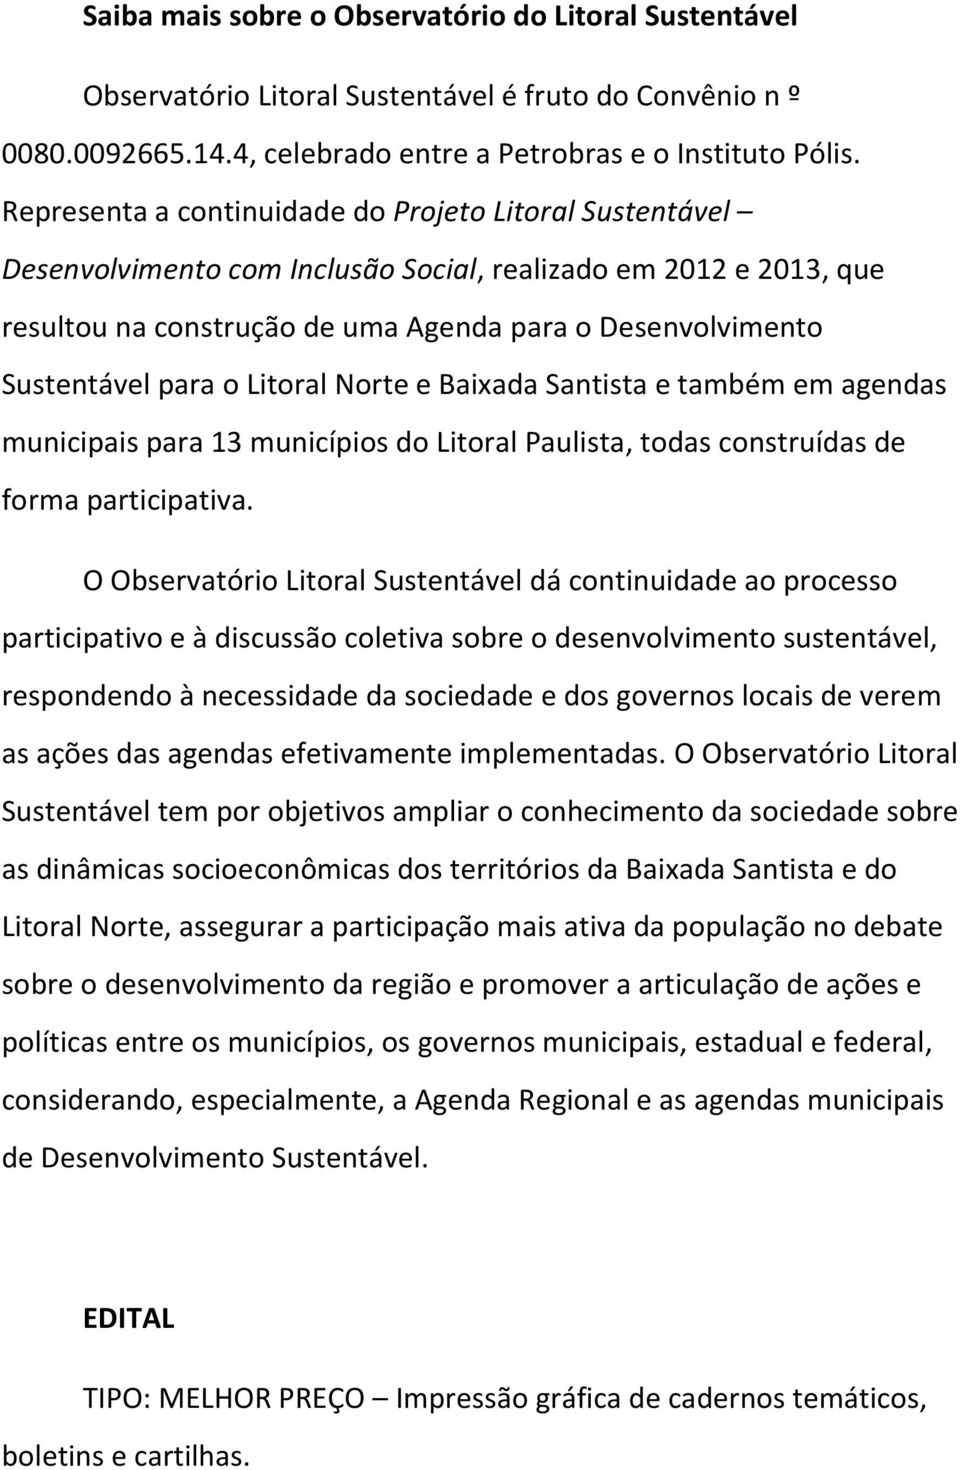 para o Litoral Norte e Baixada Santista e também em agendas municipais para 13 municípios do Litoral Paulista, todas construídas de forma participativa.